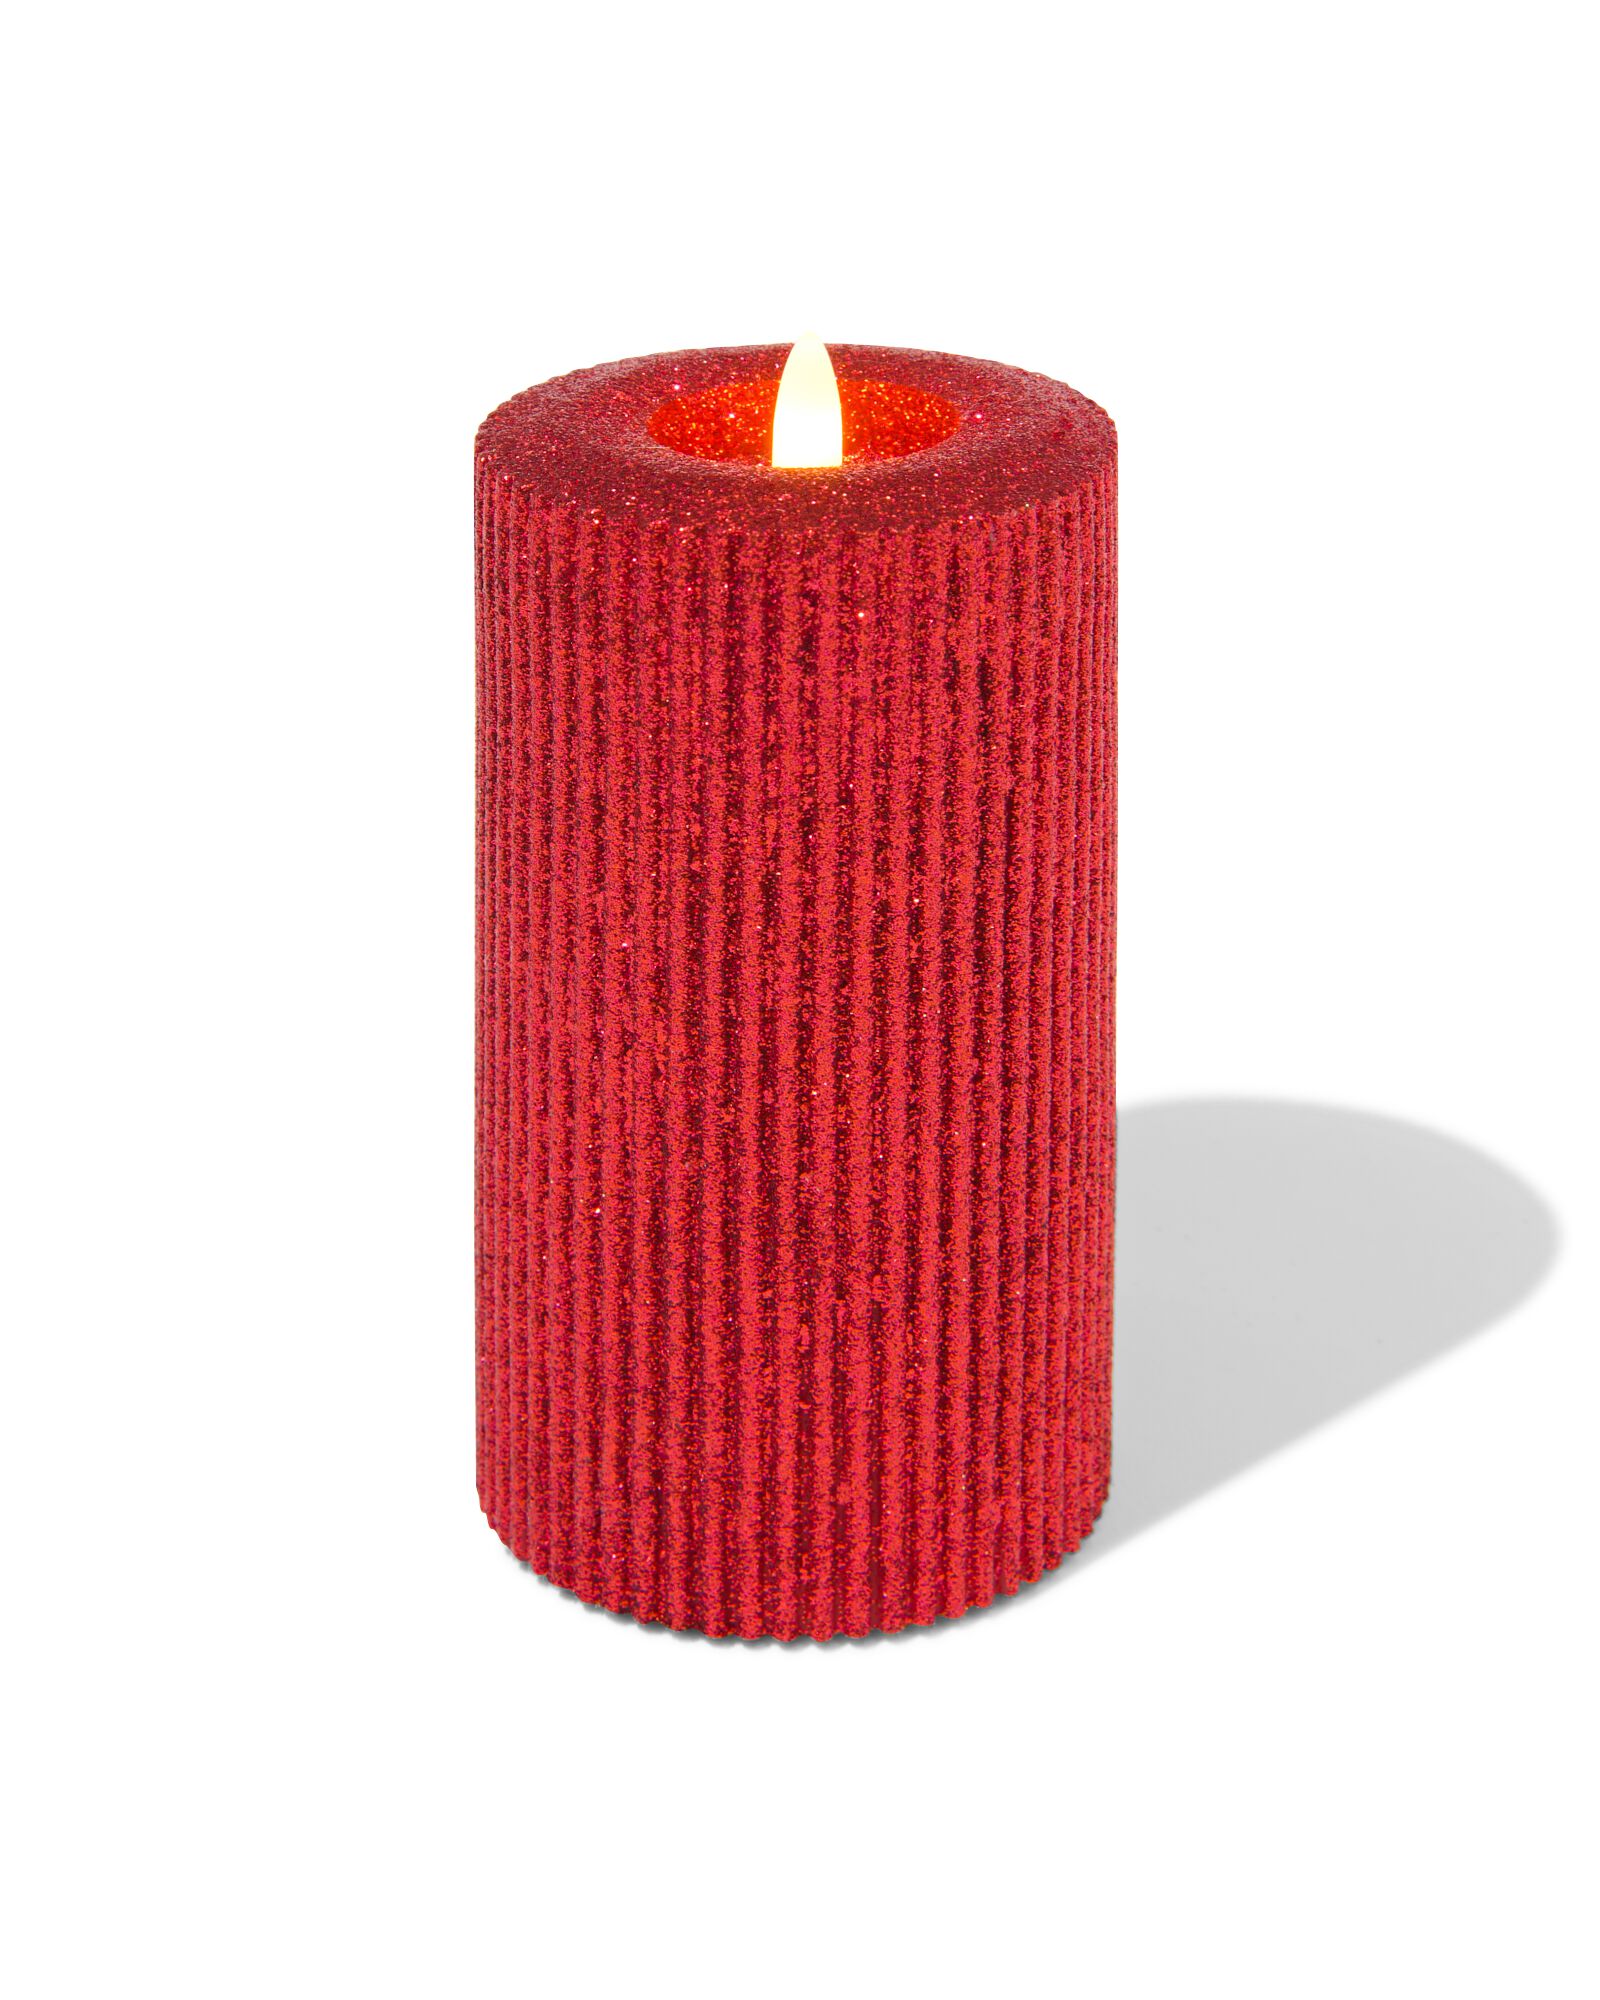 bougie LED rouge paillette blanc chaud Ø7.5x15cm - 25540019 - HEMA